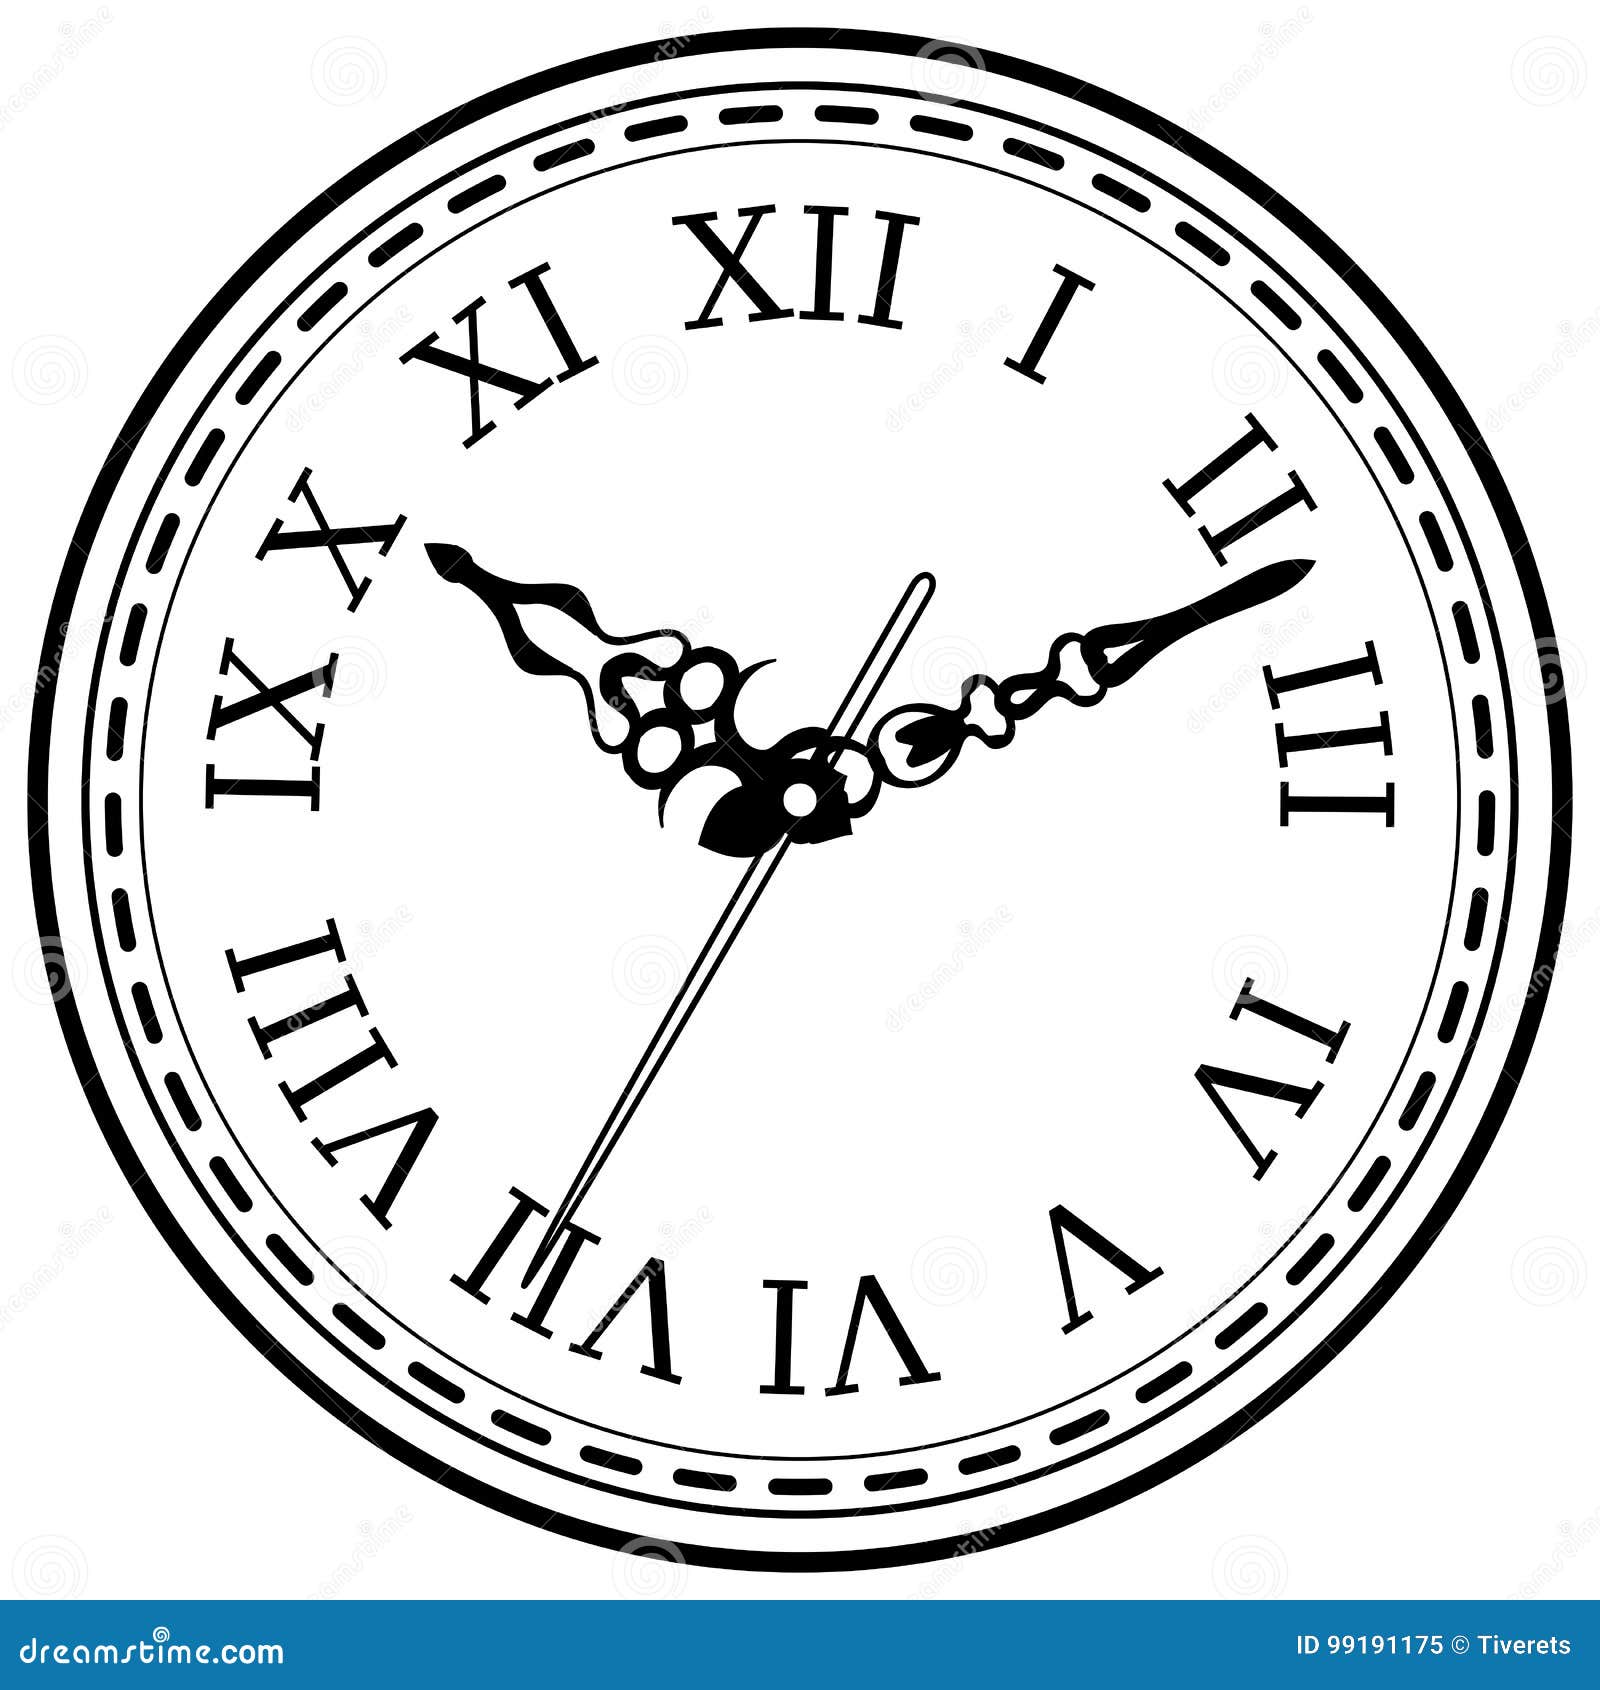 Wall clock icons | Wall clock drawing, Clock icon, Wall clock vector